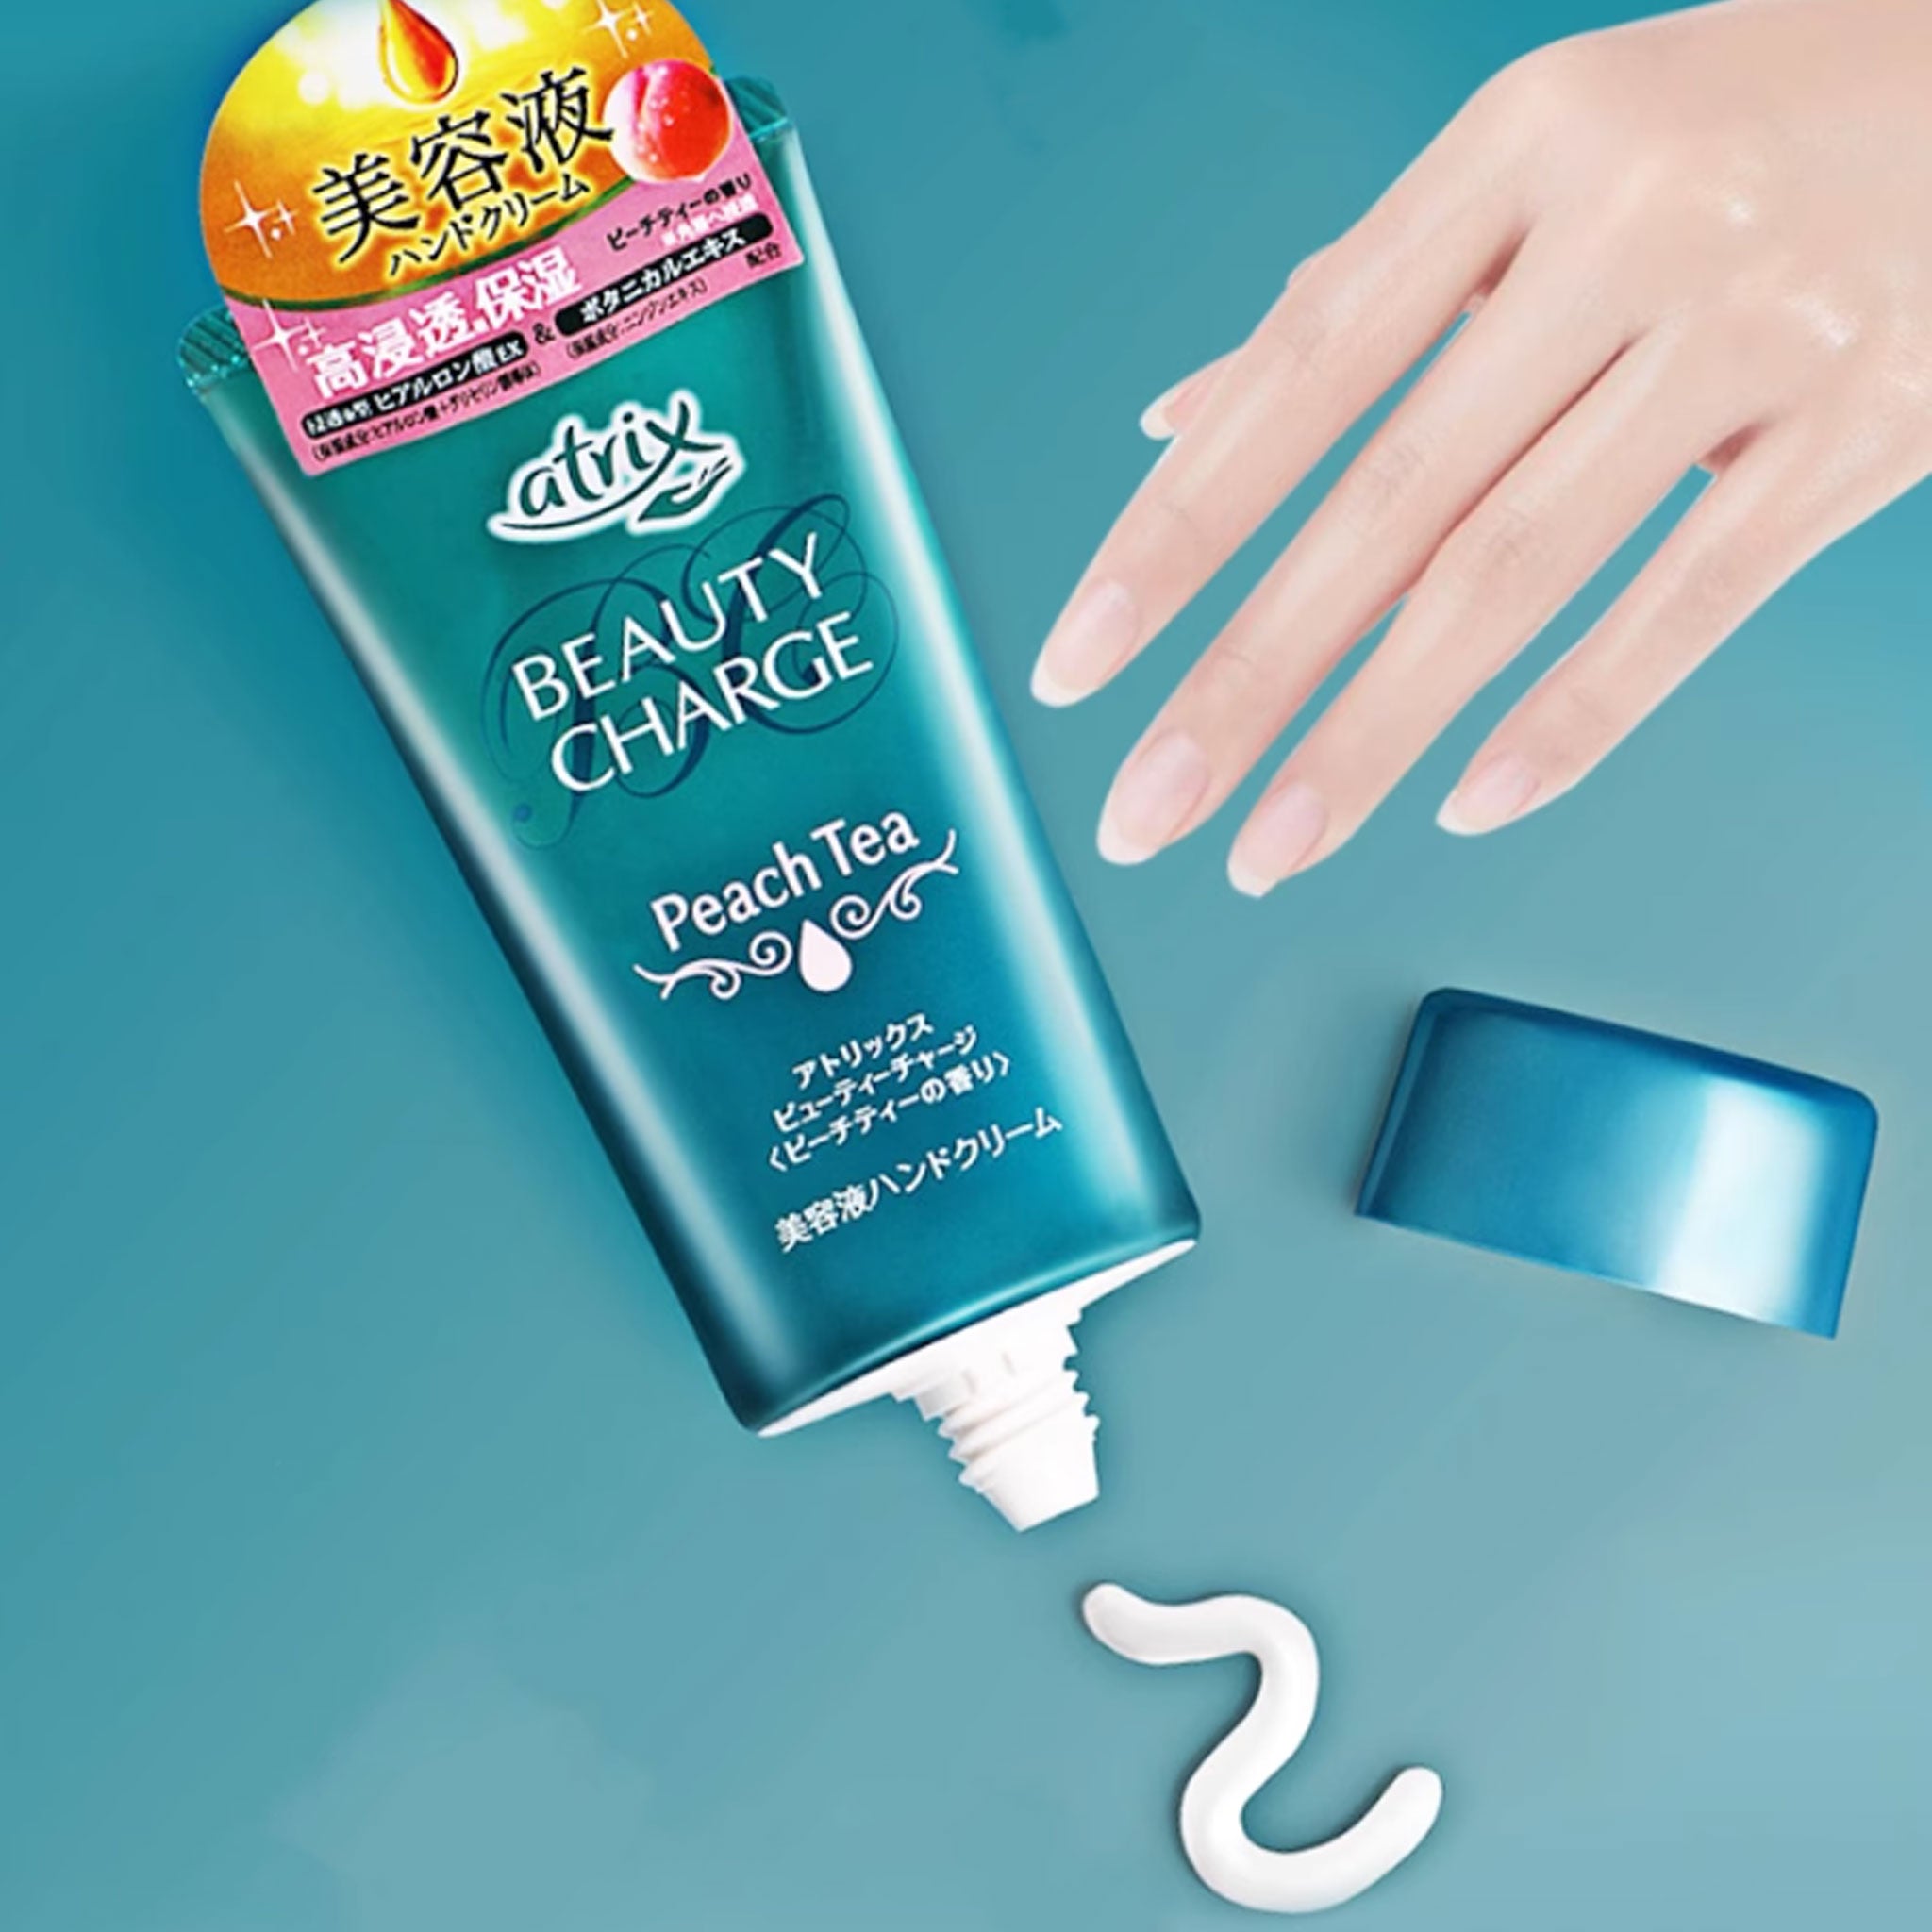 KAO Atrix Beauty Charge Hand Cream Peach Tea 80g